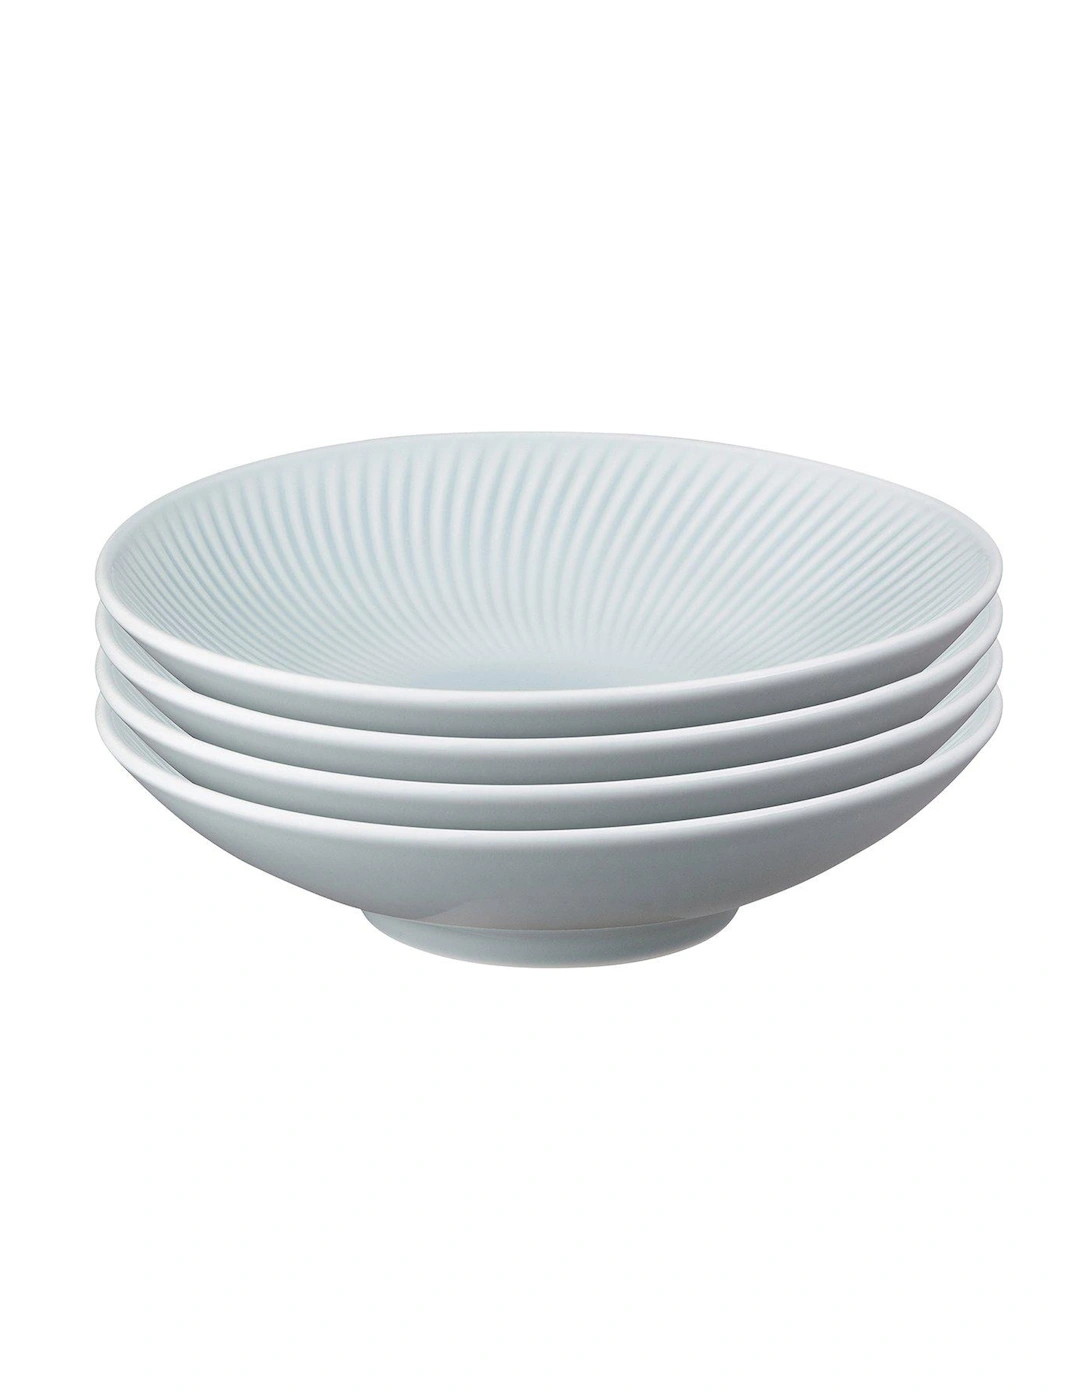 Porcelain Arc Pasta Bowls in Grey – Set of 4, 2 of 1